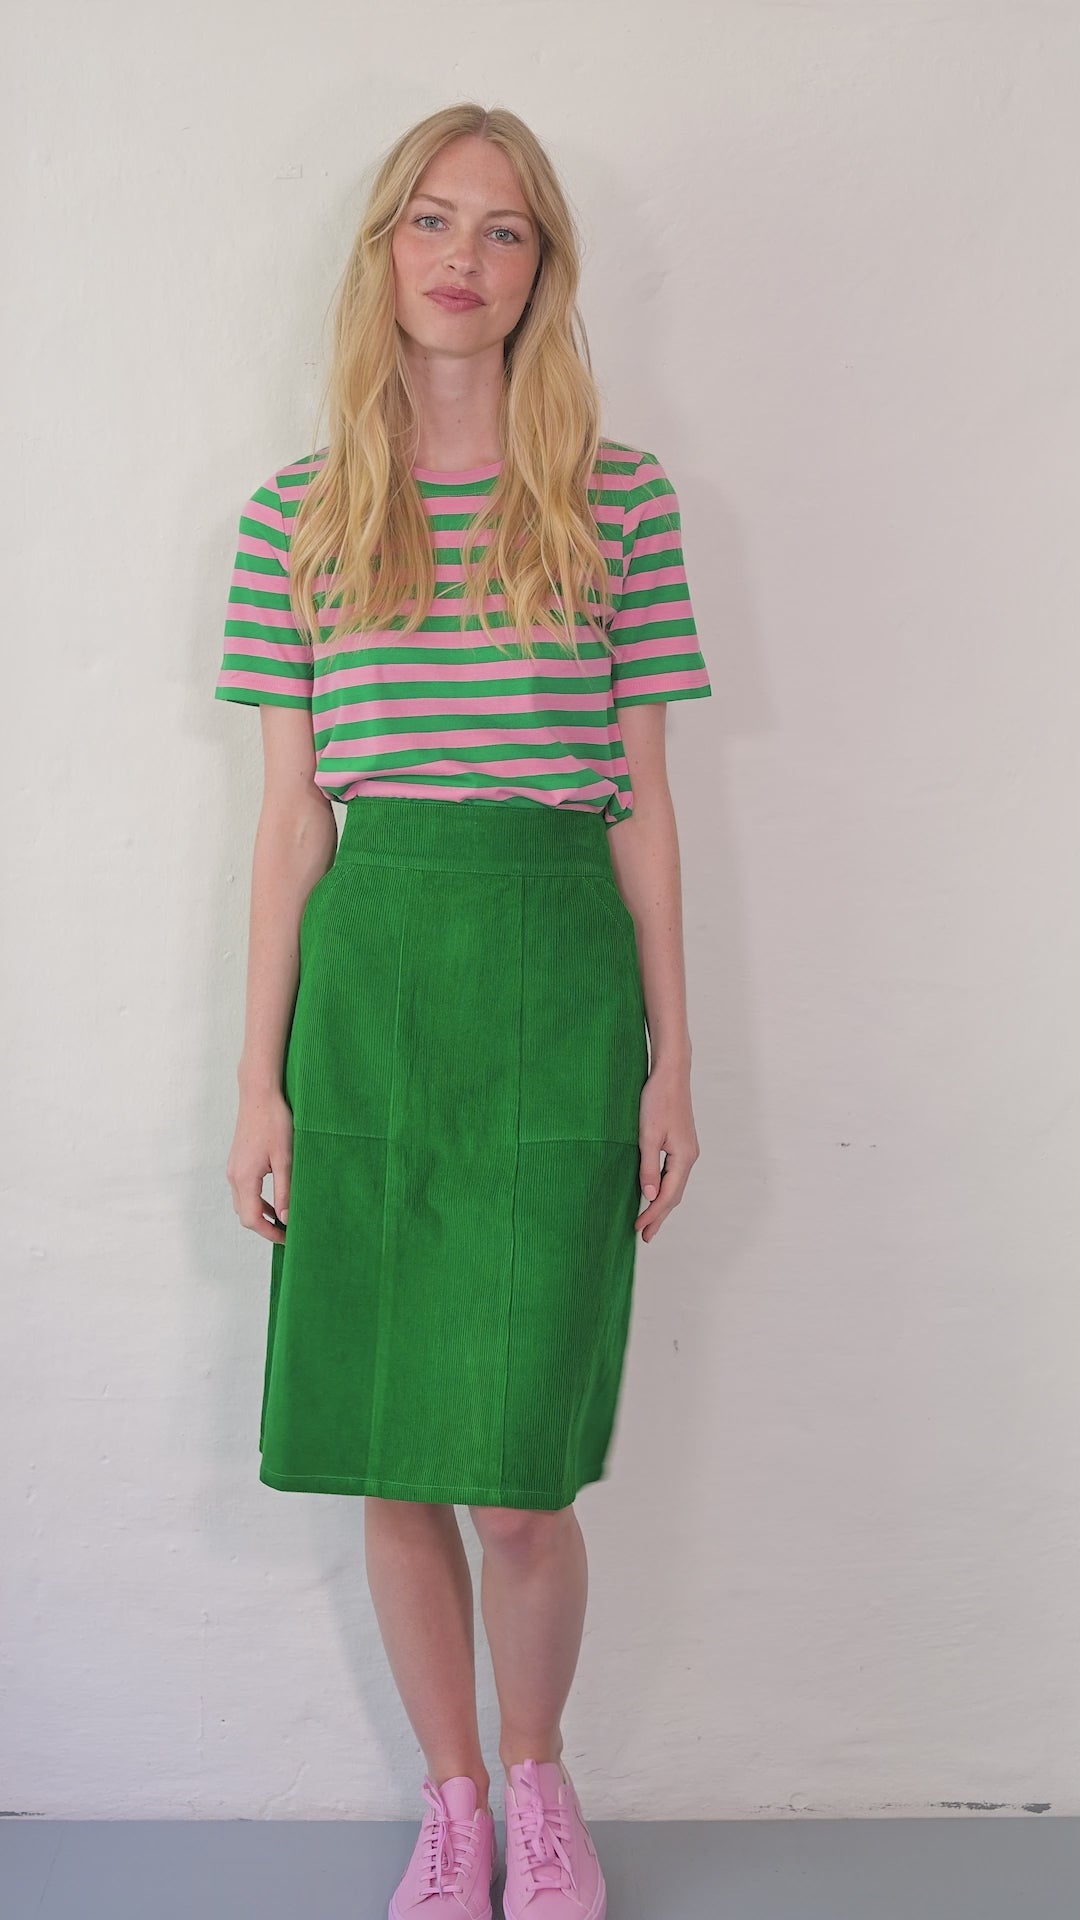 Danemaren Cord Skirt Grass Green